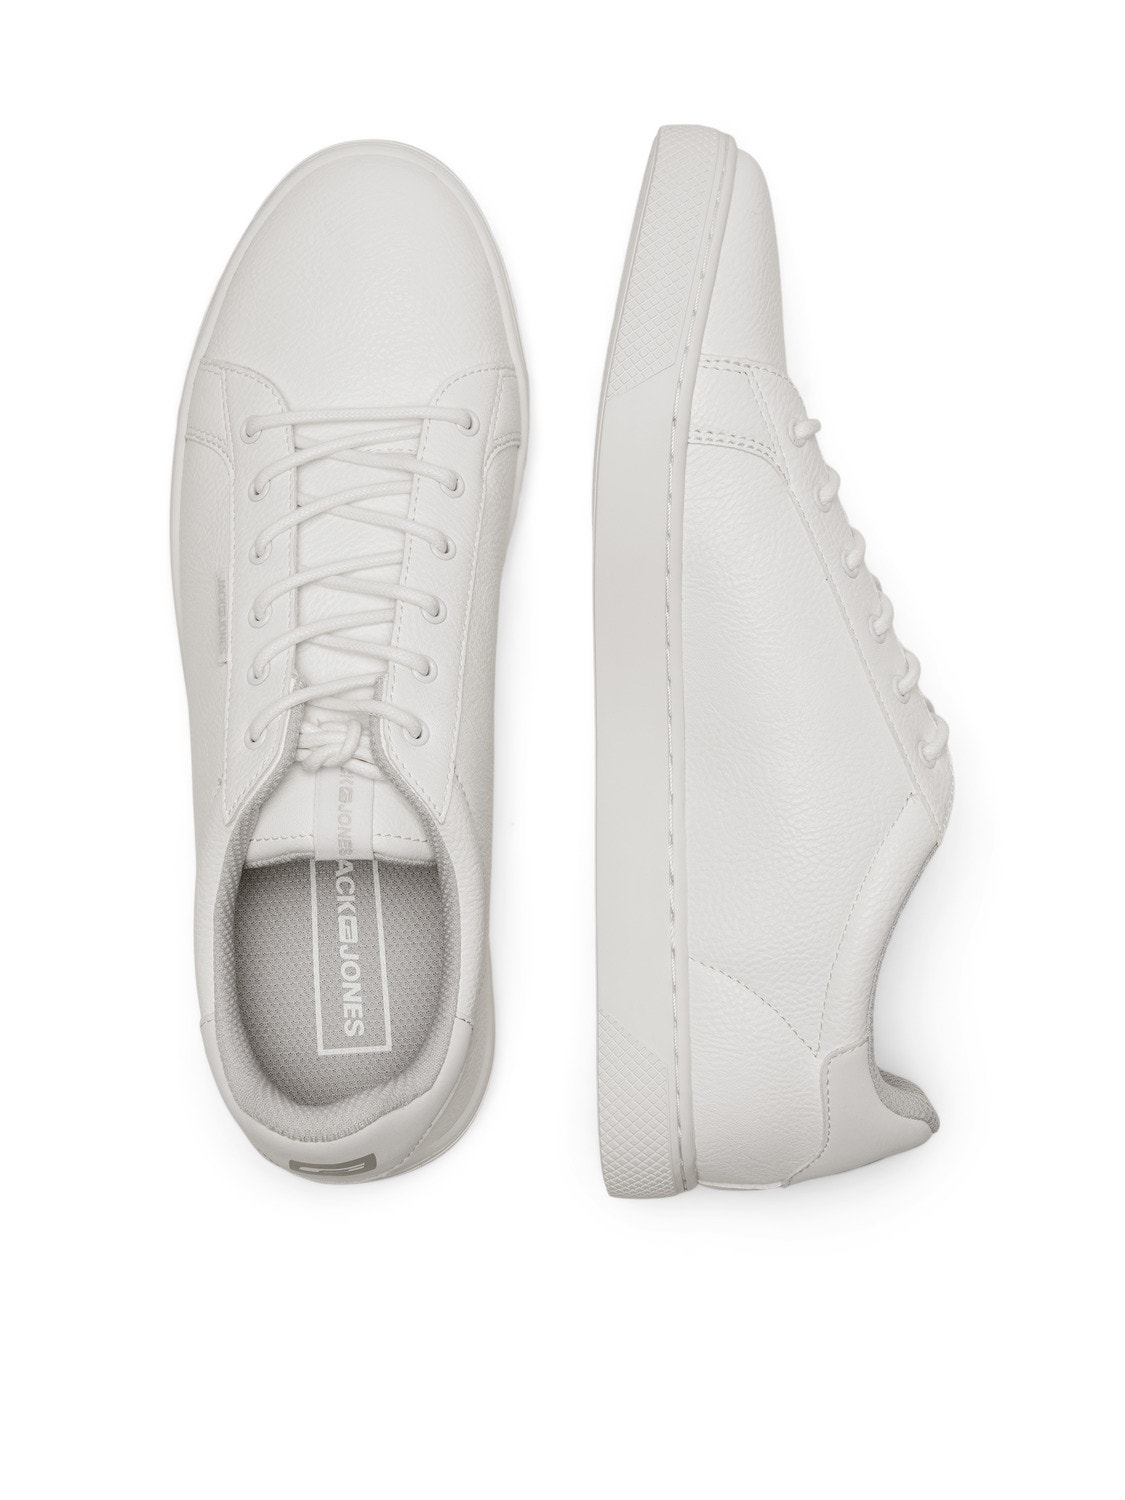 Jack & Jones Sneaker Polyester -Bright White - 12150725